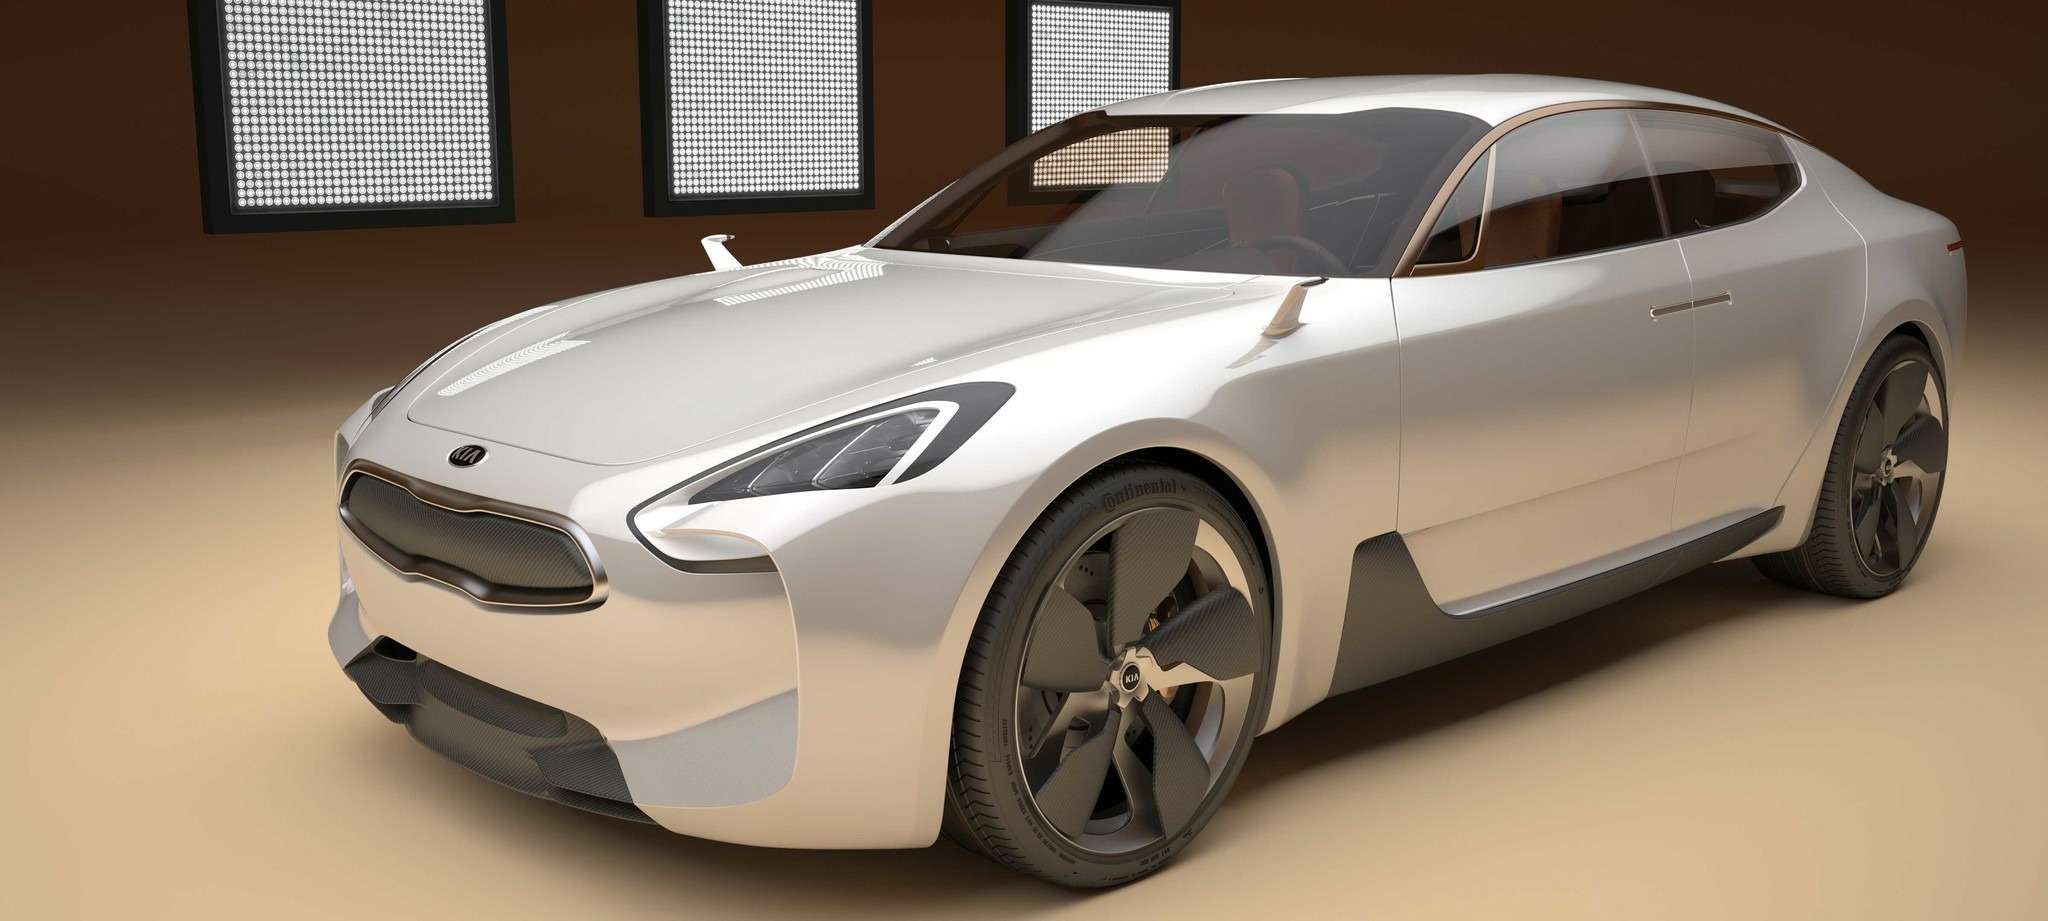 Concept Kia GT